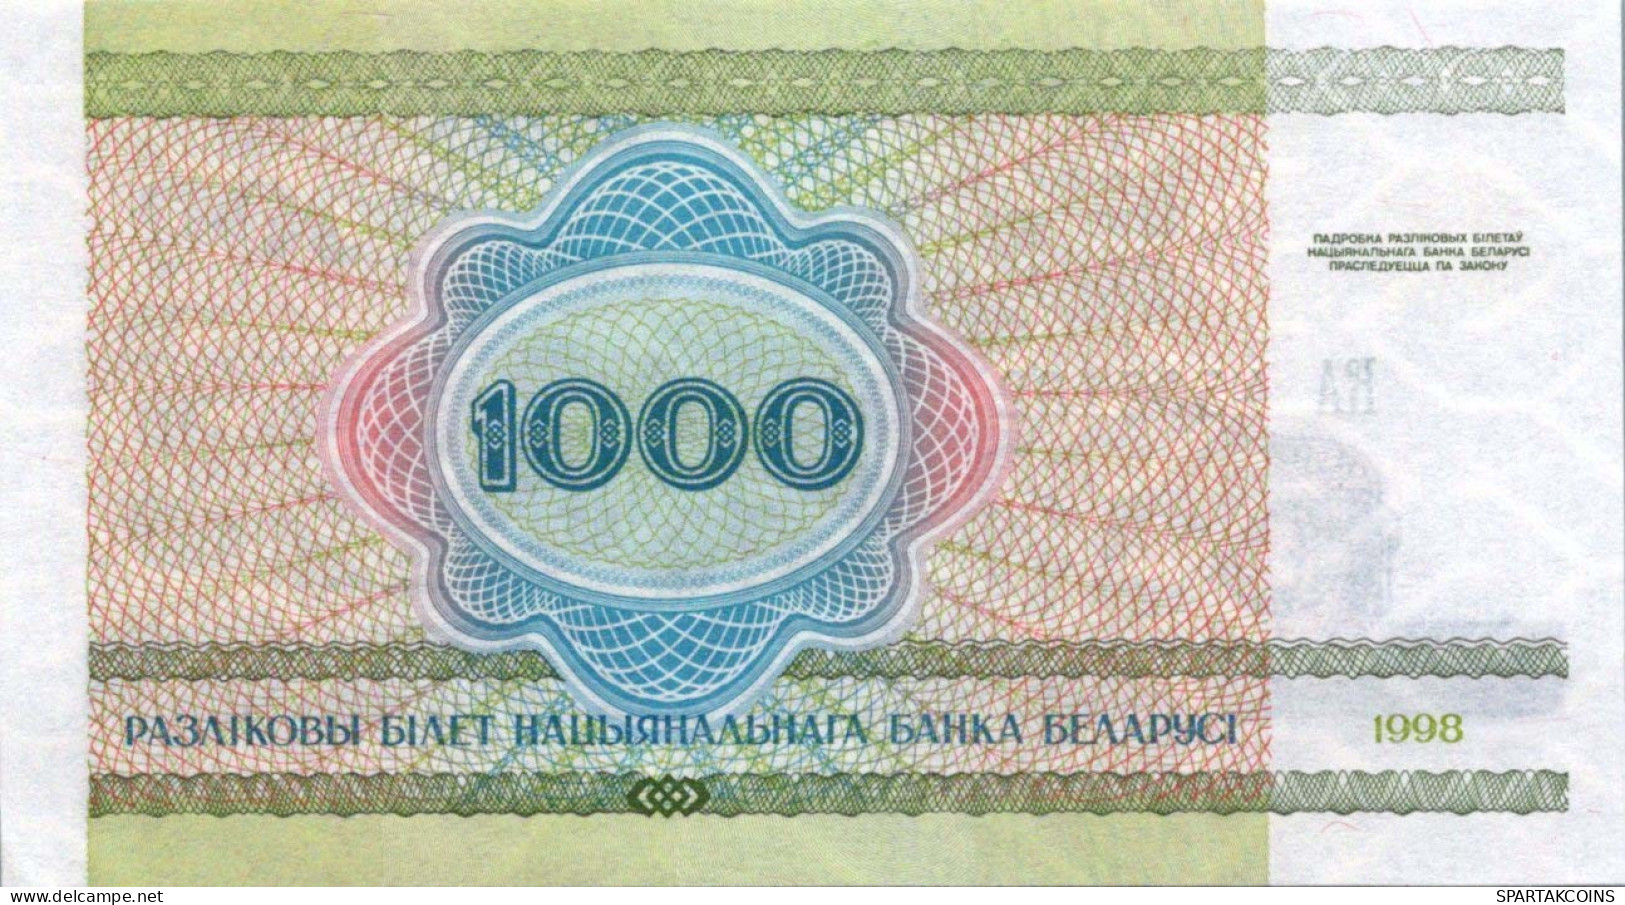 1000 RUBLES 1998 BELARUS Papiergeld Banknote #PJ292 - [11] Local Banknote Issues